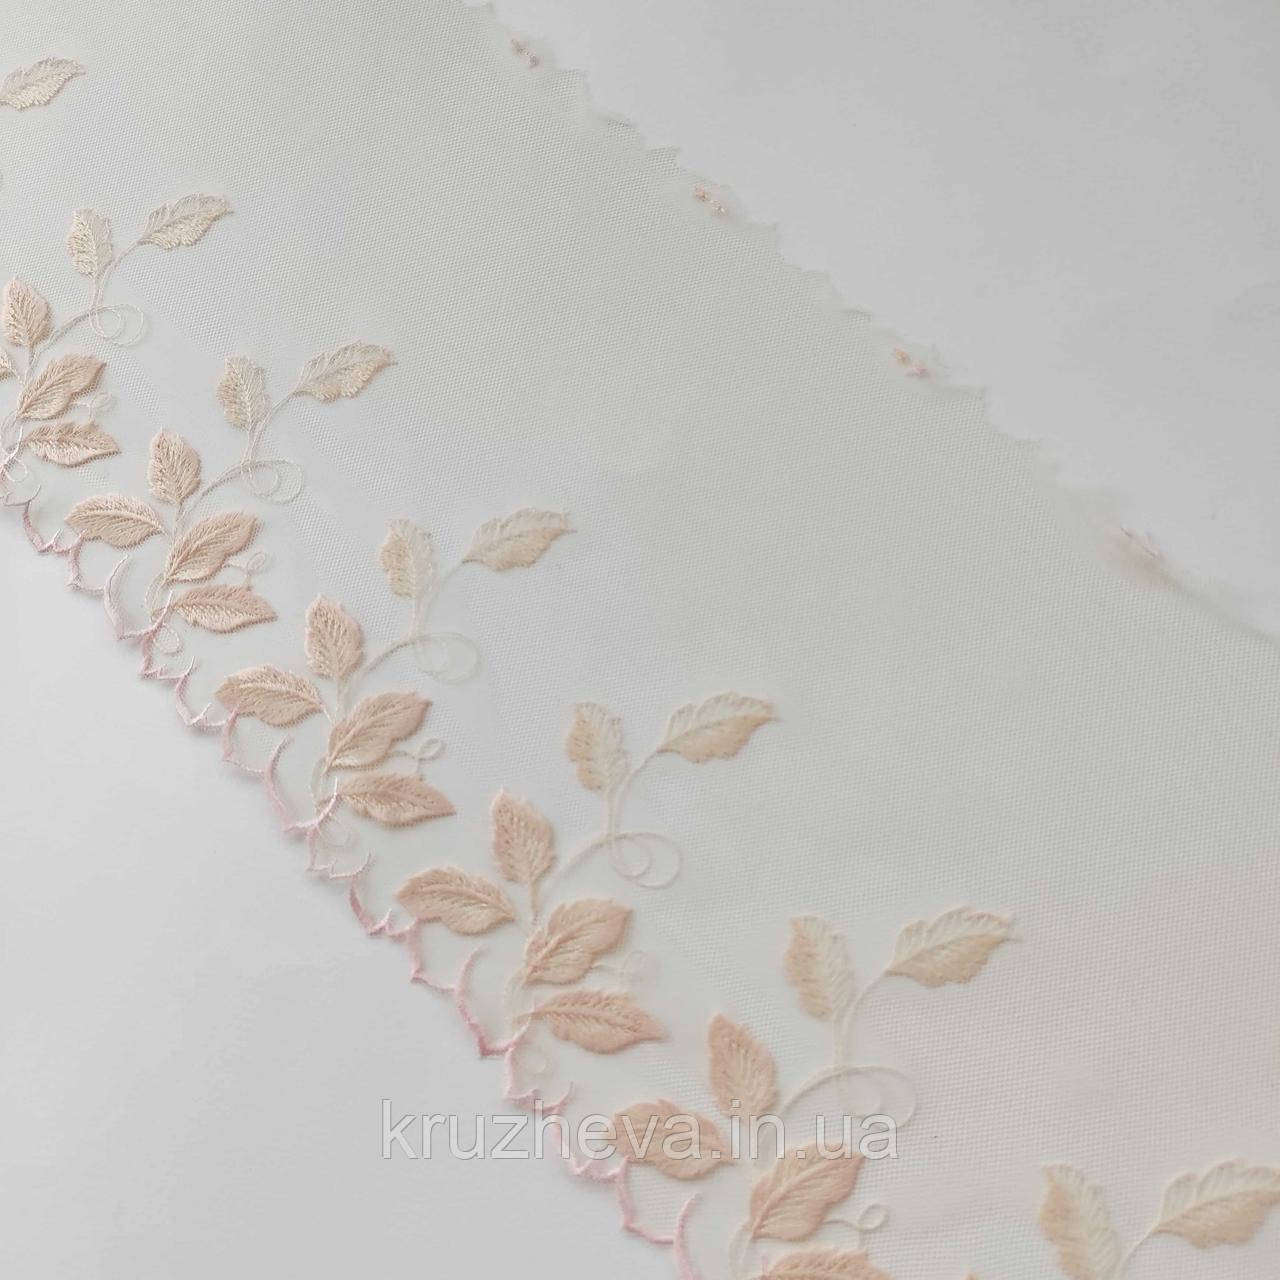 Ажурне мереживо вишивка на сітці: бежева і блідо-рожева нитки на бежевій сітці, ширина 21 см